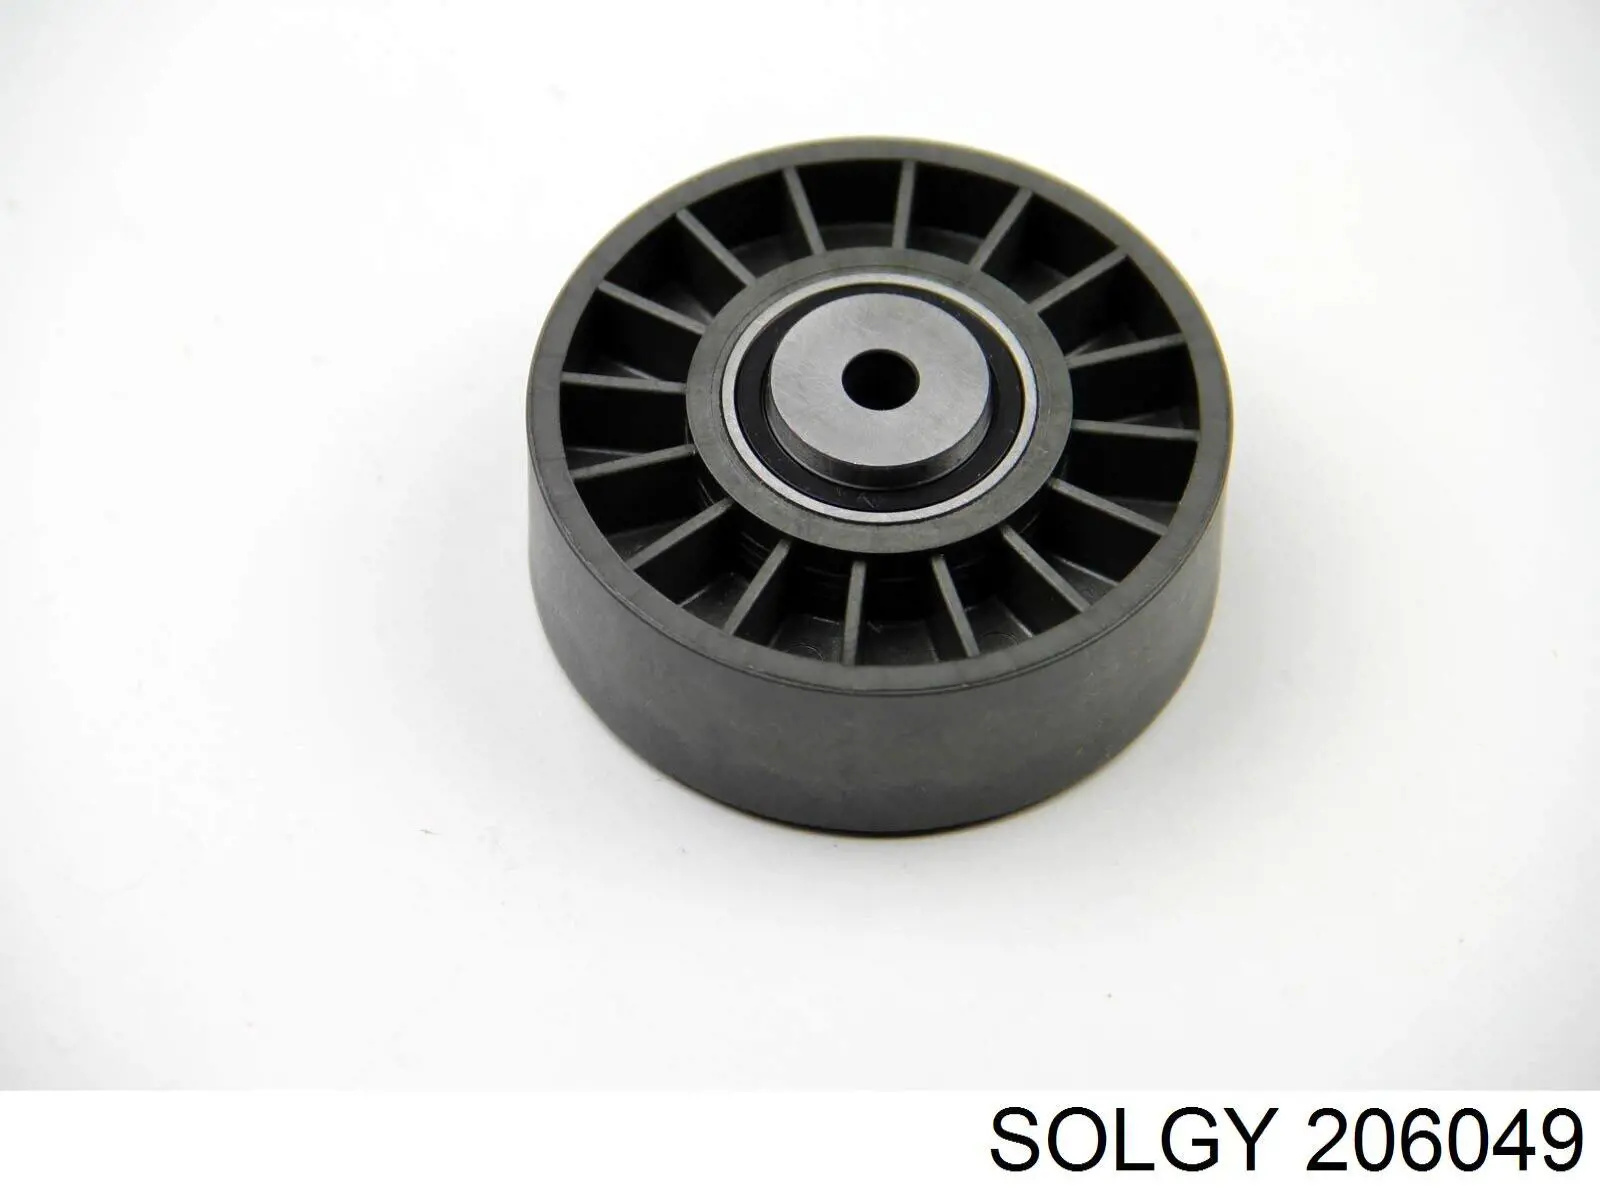 206049 Solgy rótula barra de acoplamiento exterior